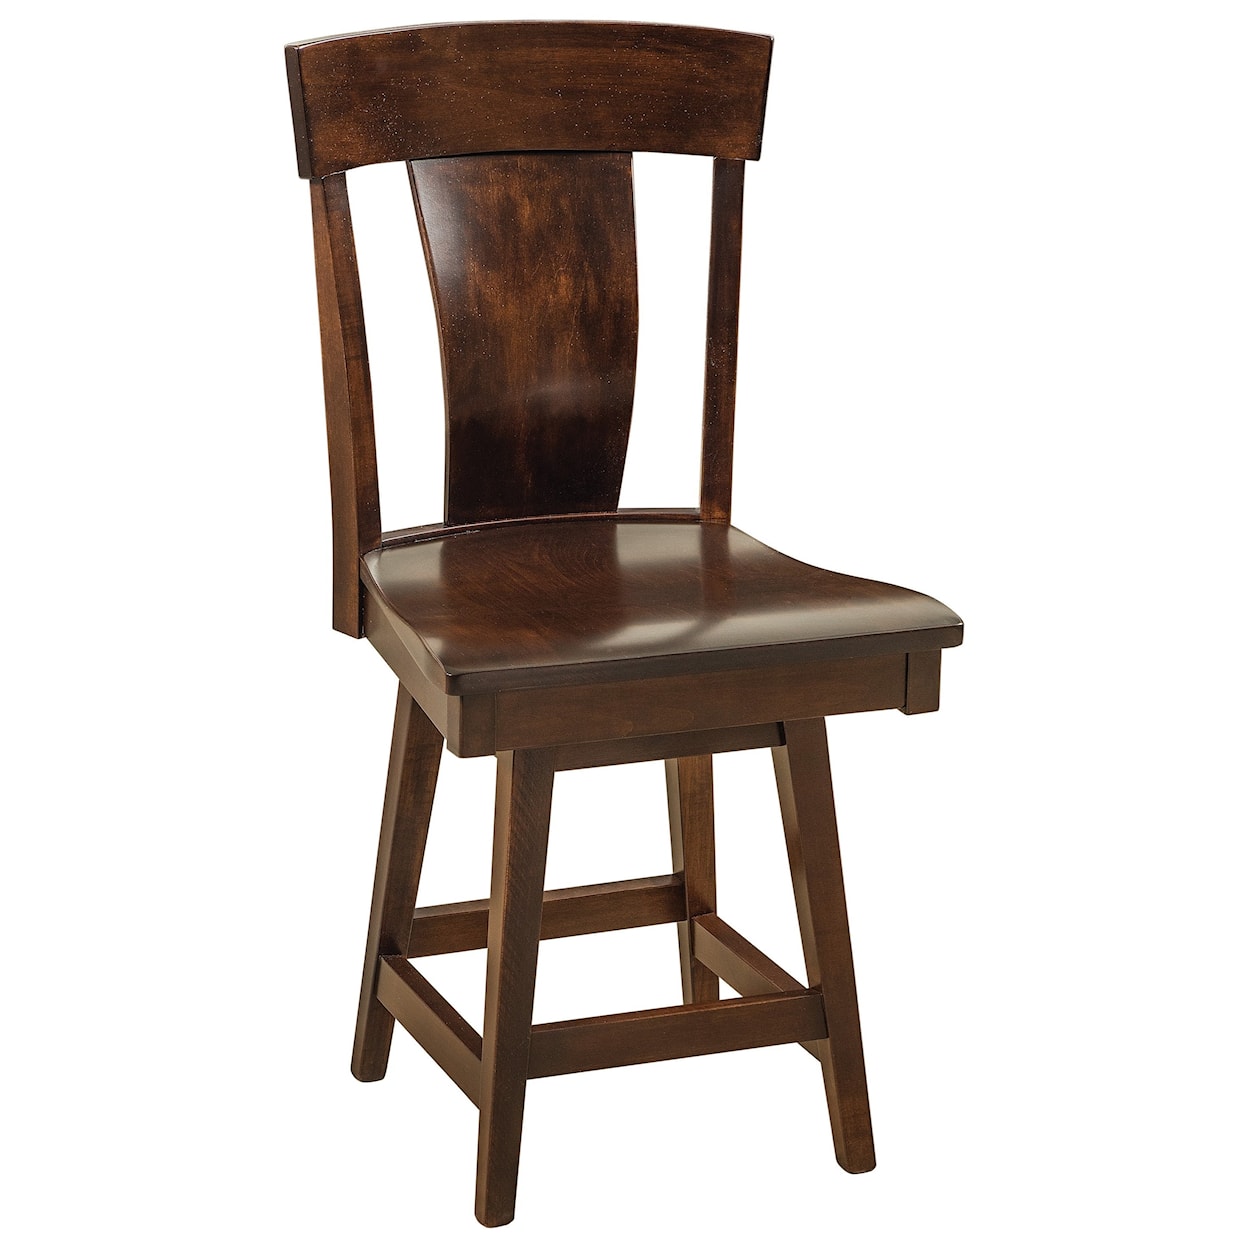 F&N Woodworking Baldwin Swivel Bar Stool - Fabric Seat